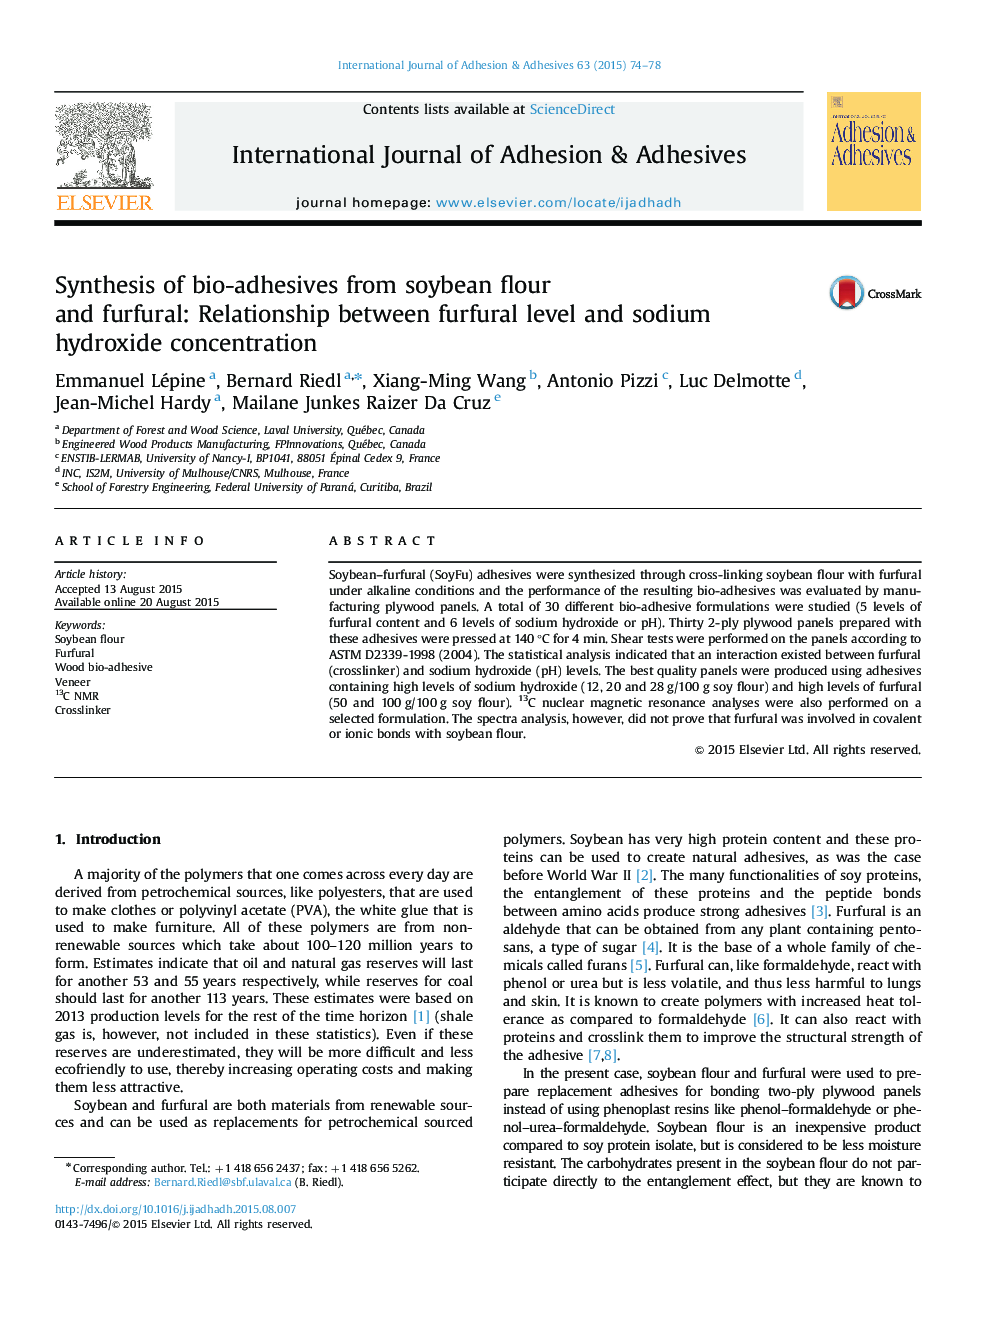 سنتز زیستی چسبندگی از آرد سویا و فورفورال: رابطه سطح فرسفورل و غلظت هیدروکسید سدیم 